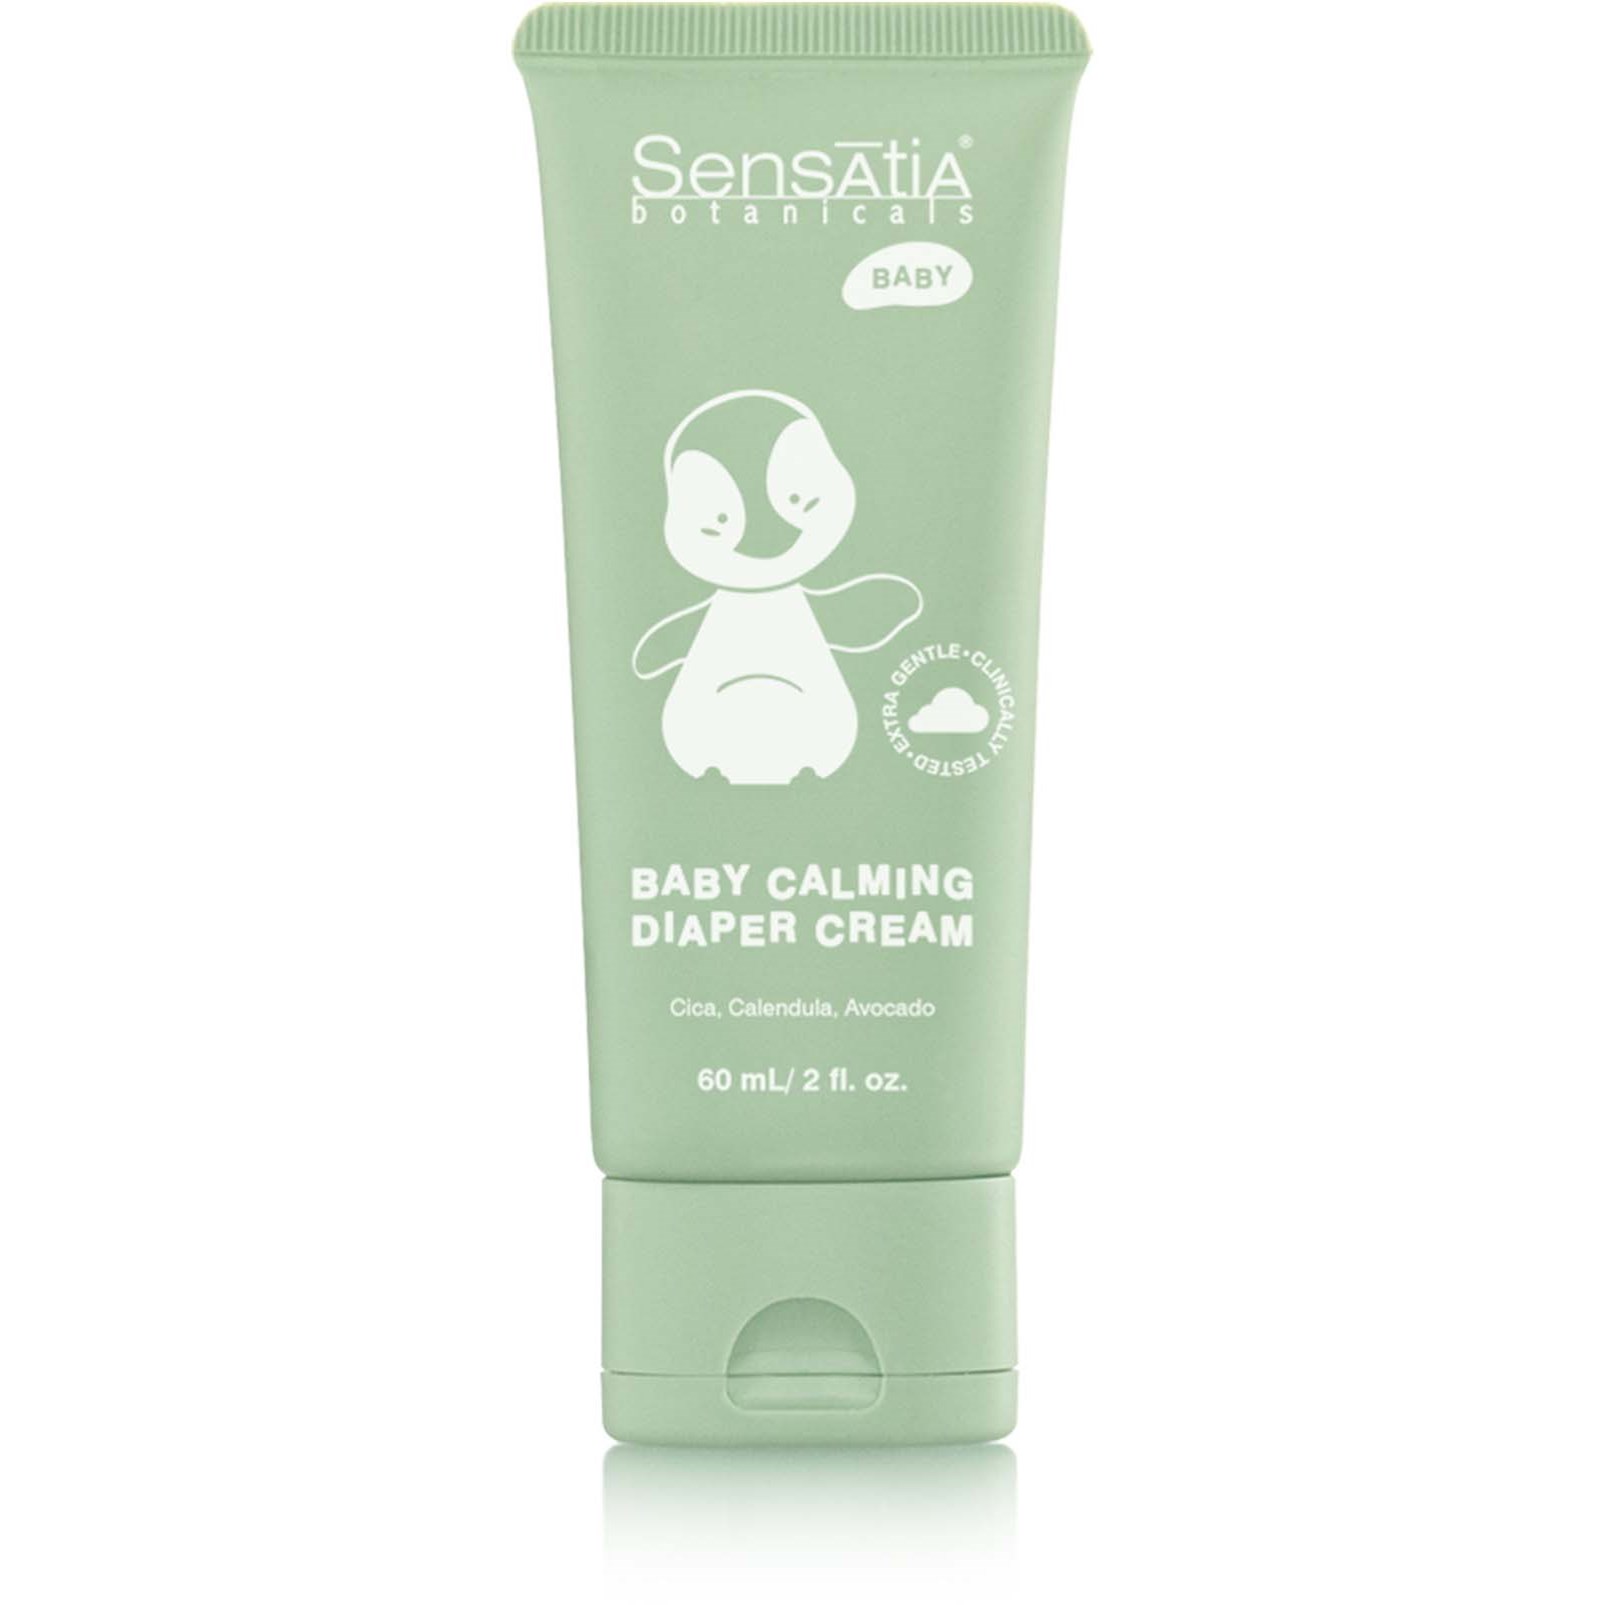 Sensatia Botanicals Baby Calming Diaper Cream 60 ml